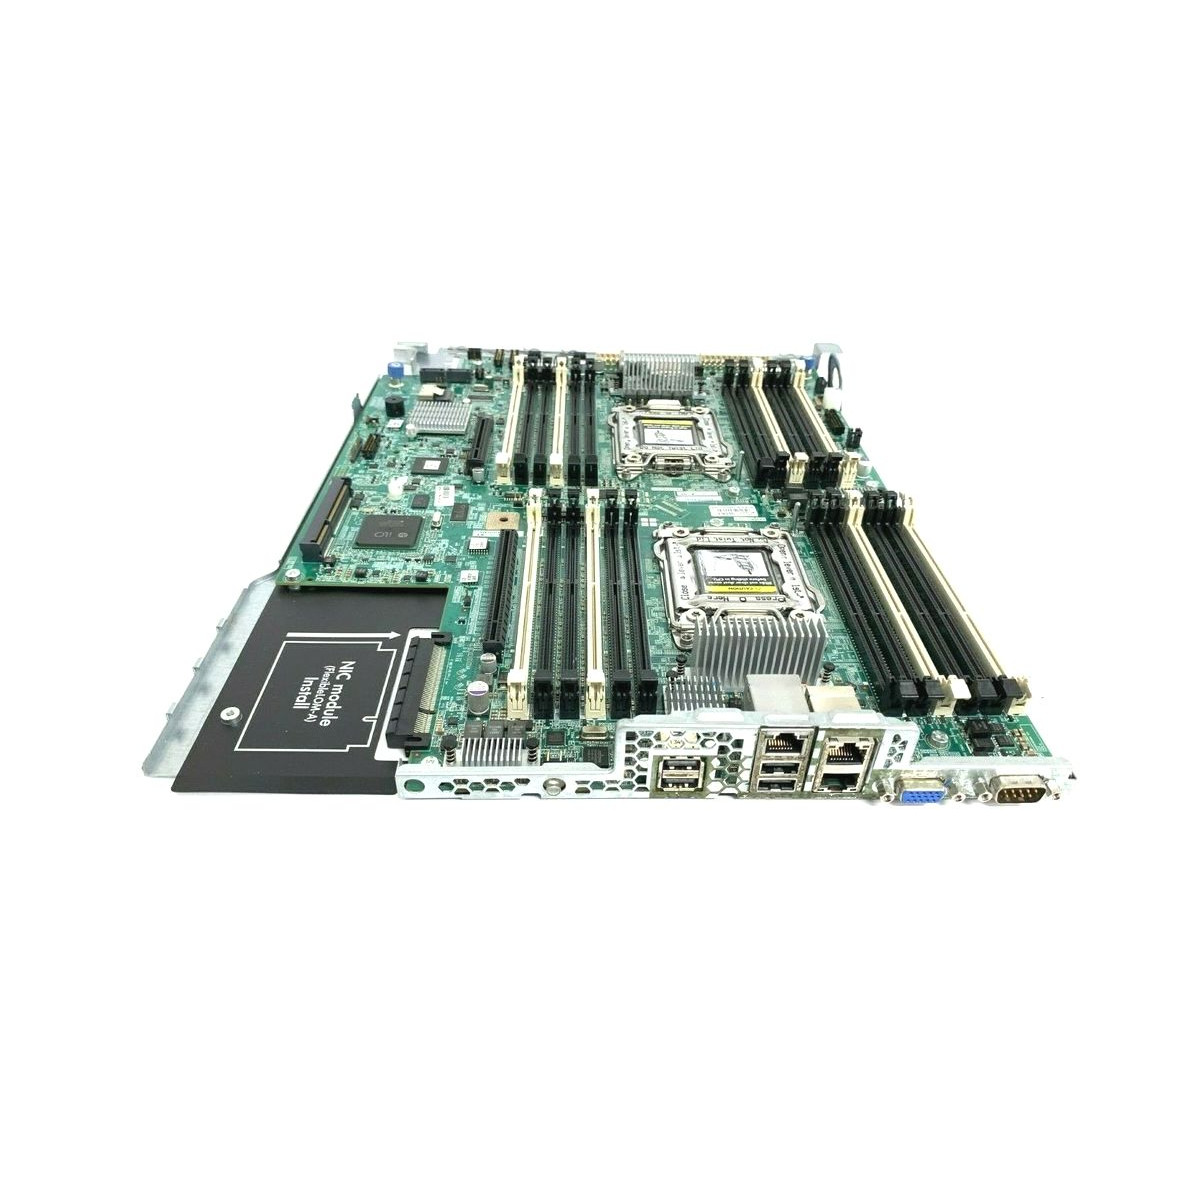 PLYTA HP DL160 G8 4K1364 2xLGA2011 DDR3 648444-002